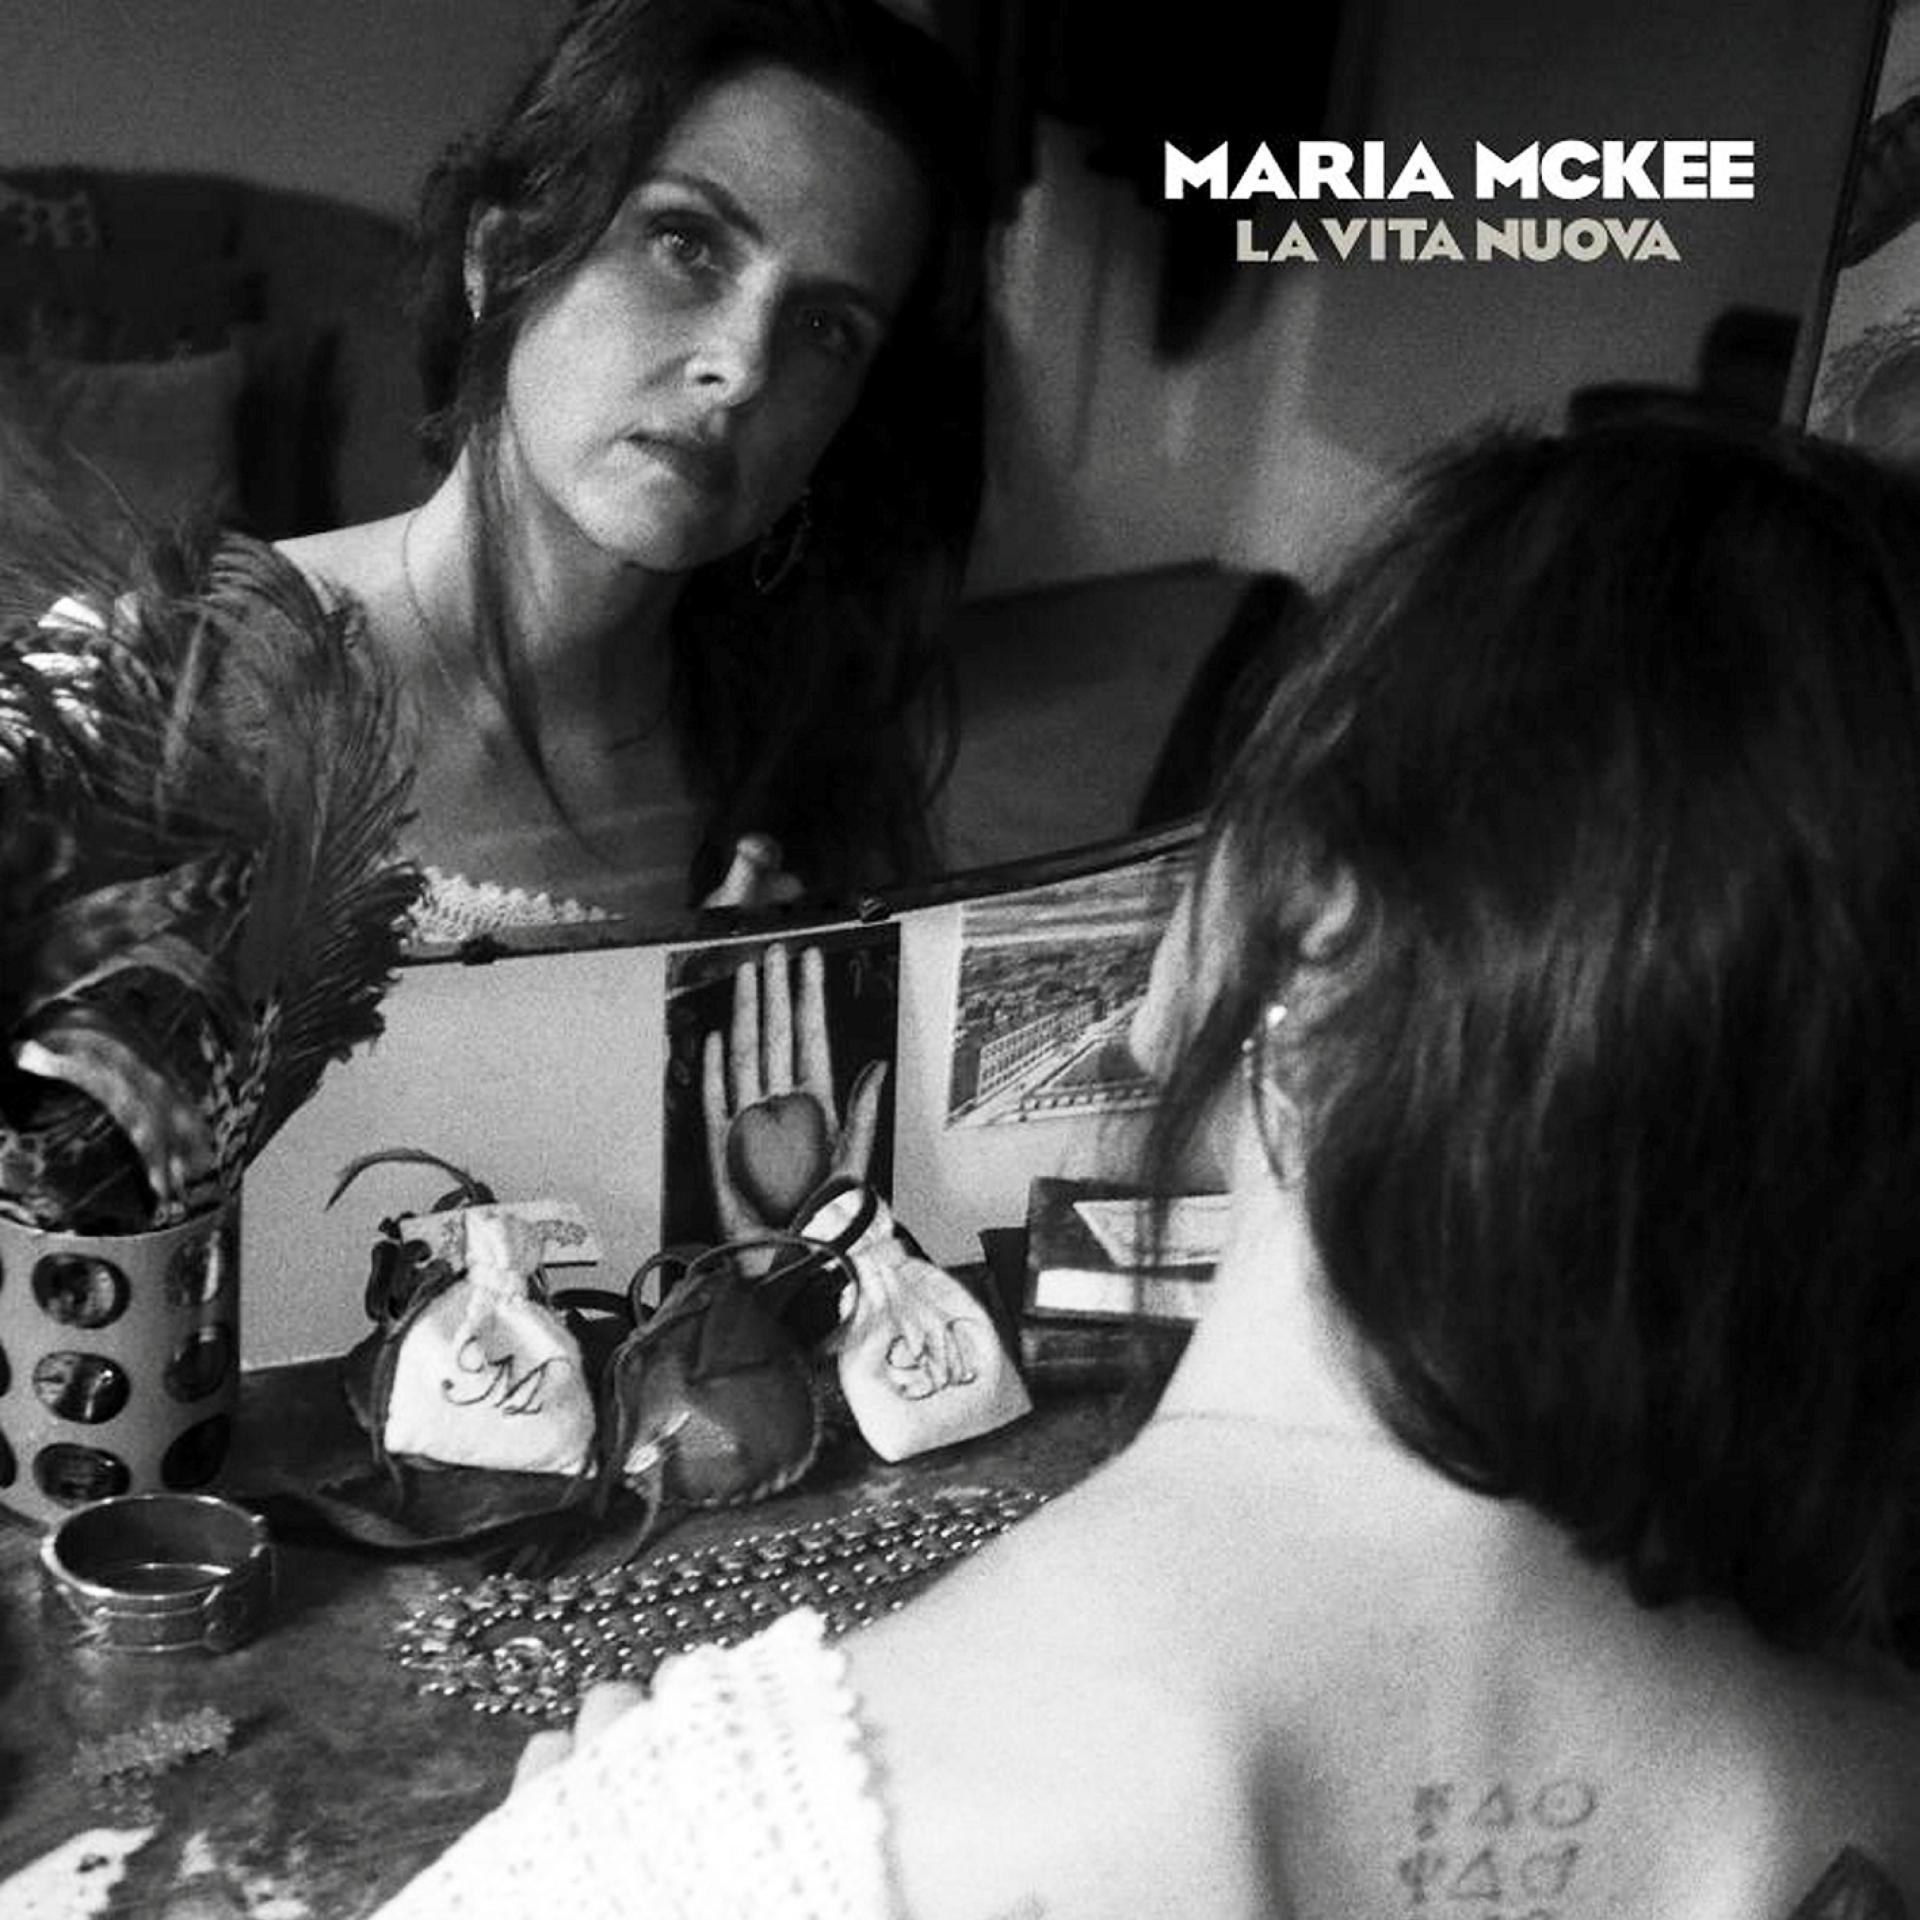 Maria McKee,KUL Anm Musikk B:«La Vita Nuova»
KUL Anm Musikk C:Afar